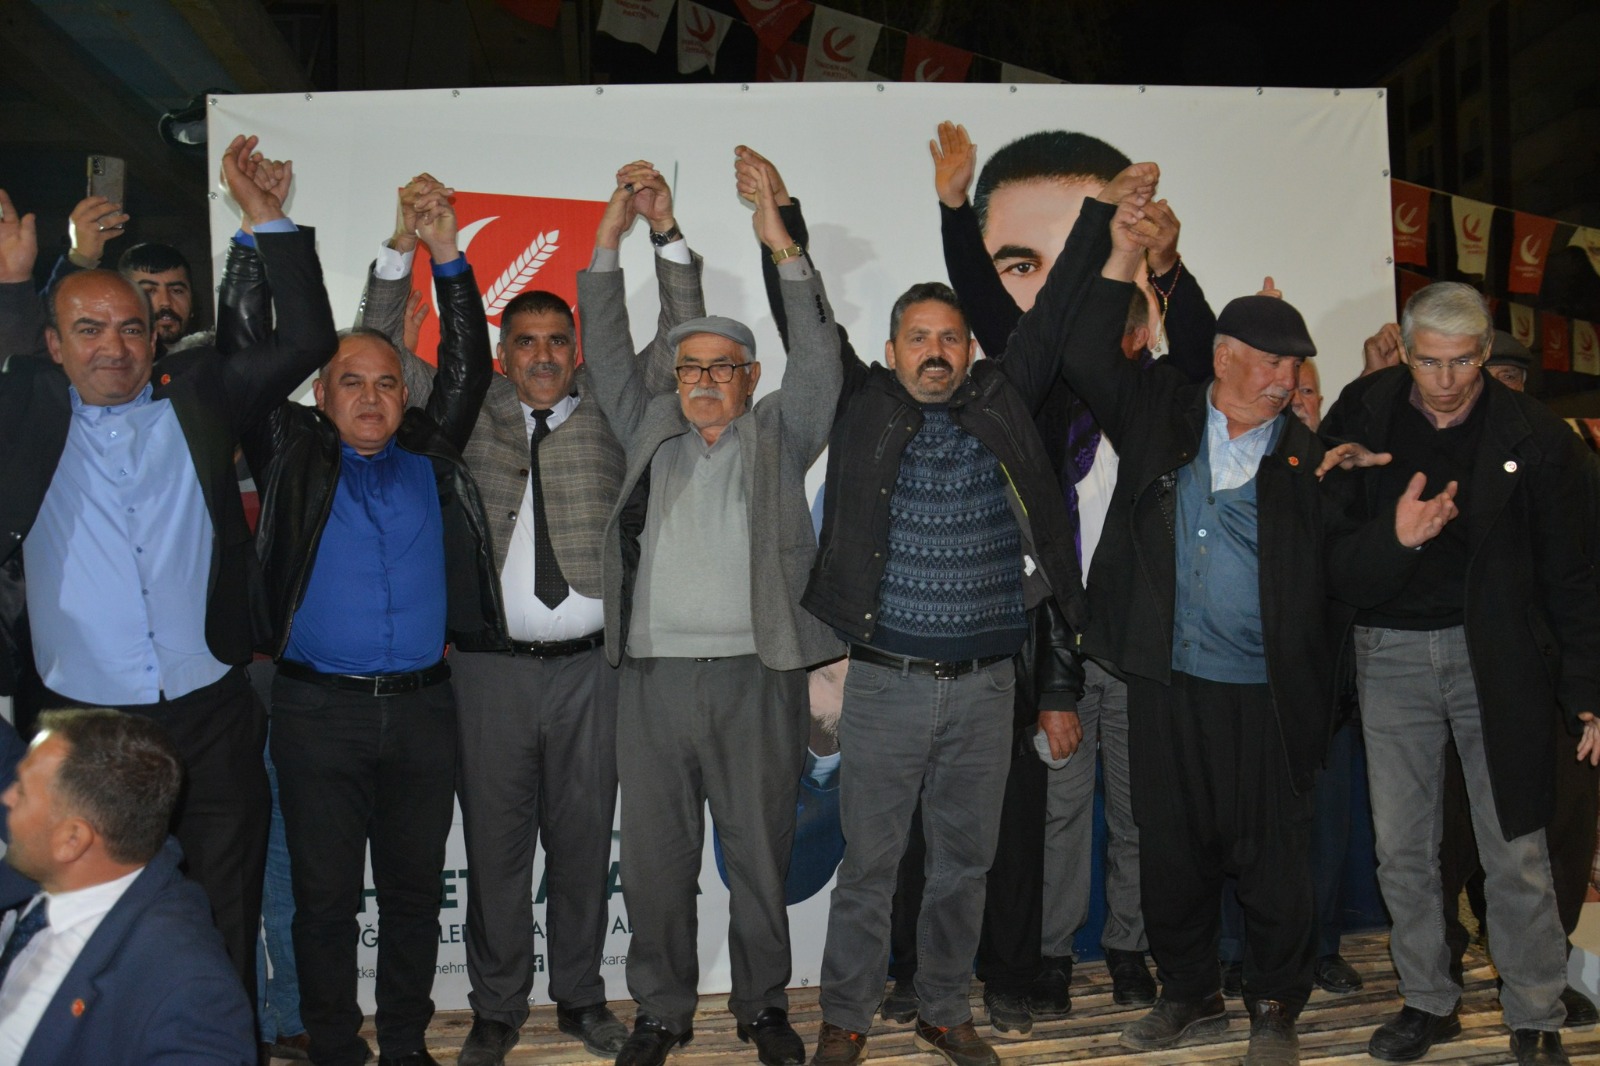 Türkoğlu’nda Dev Katılımlarla Karaca’nın Zaferi İlan Edildi